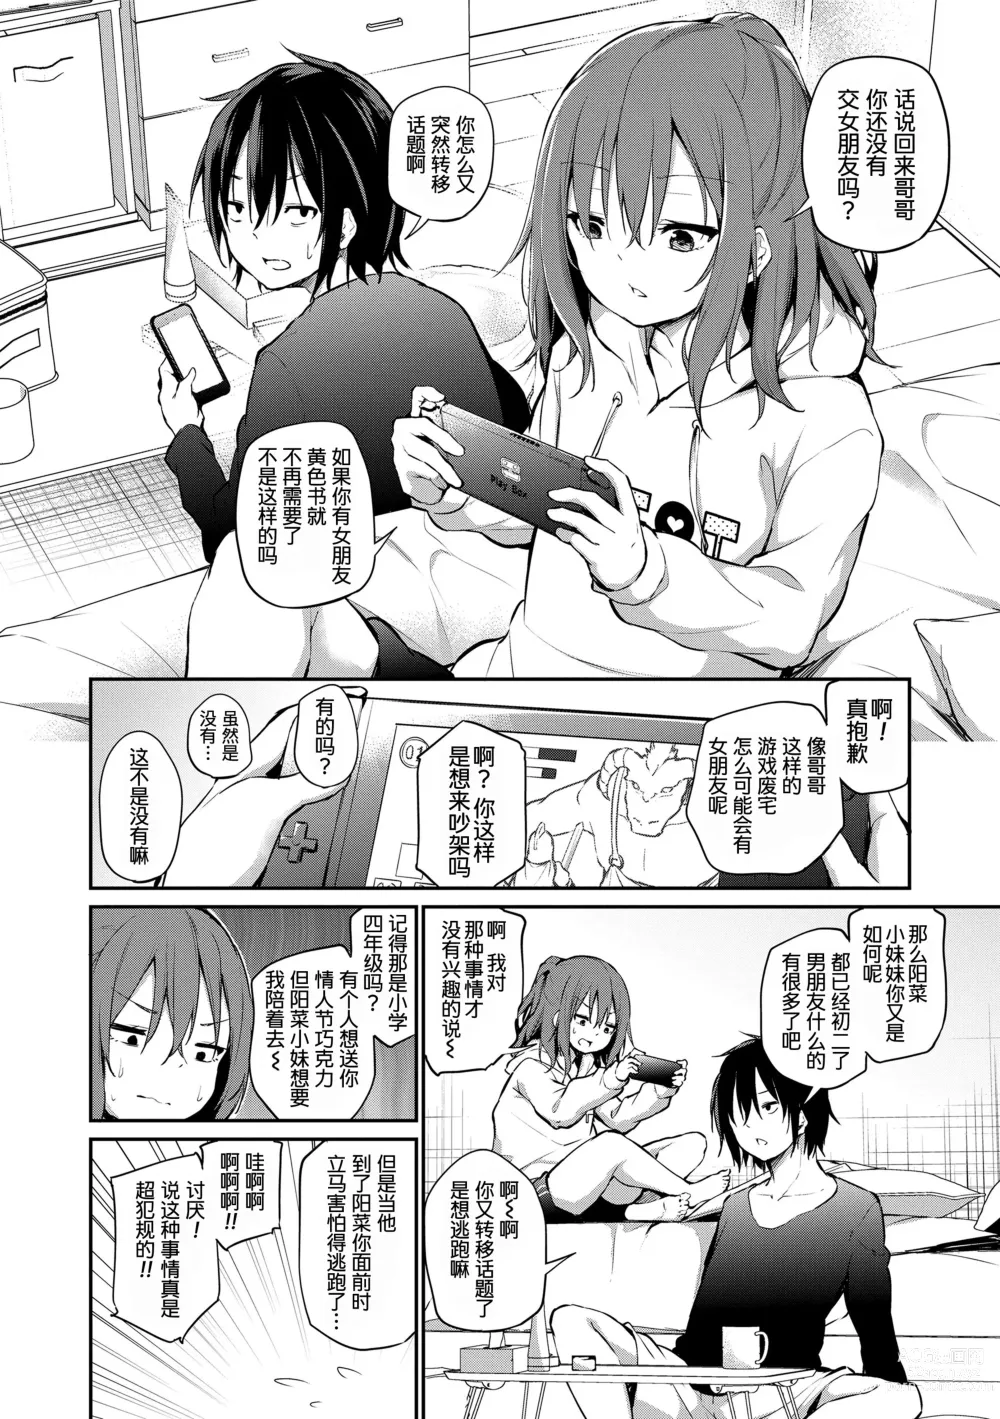 Page 6 of manga Imouto TRIP (decensored)